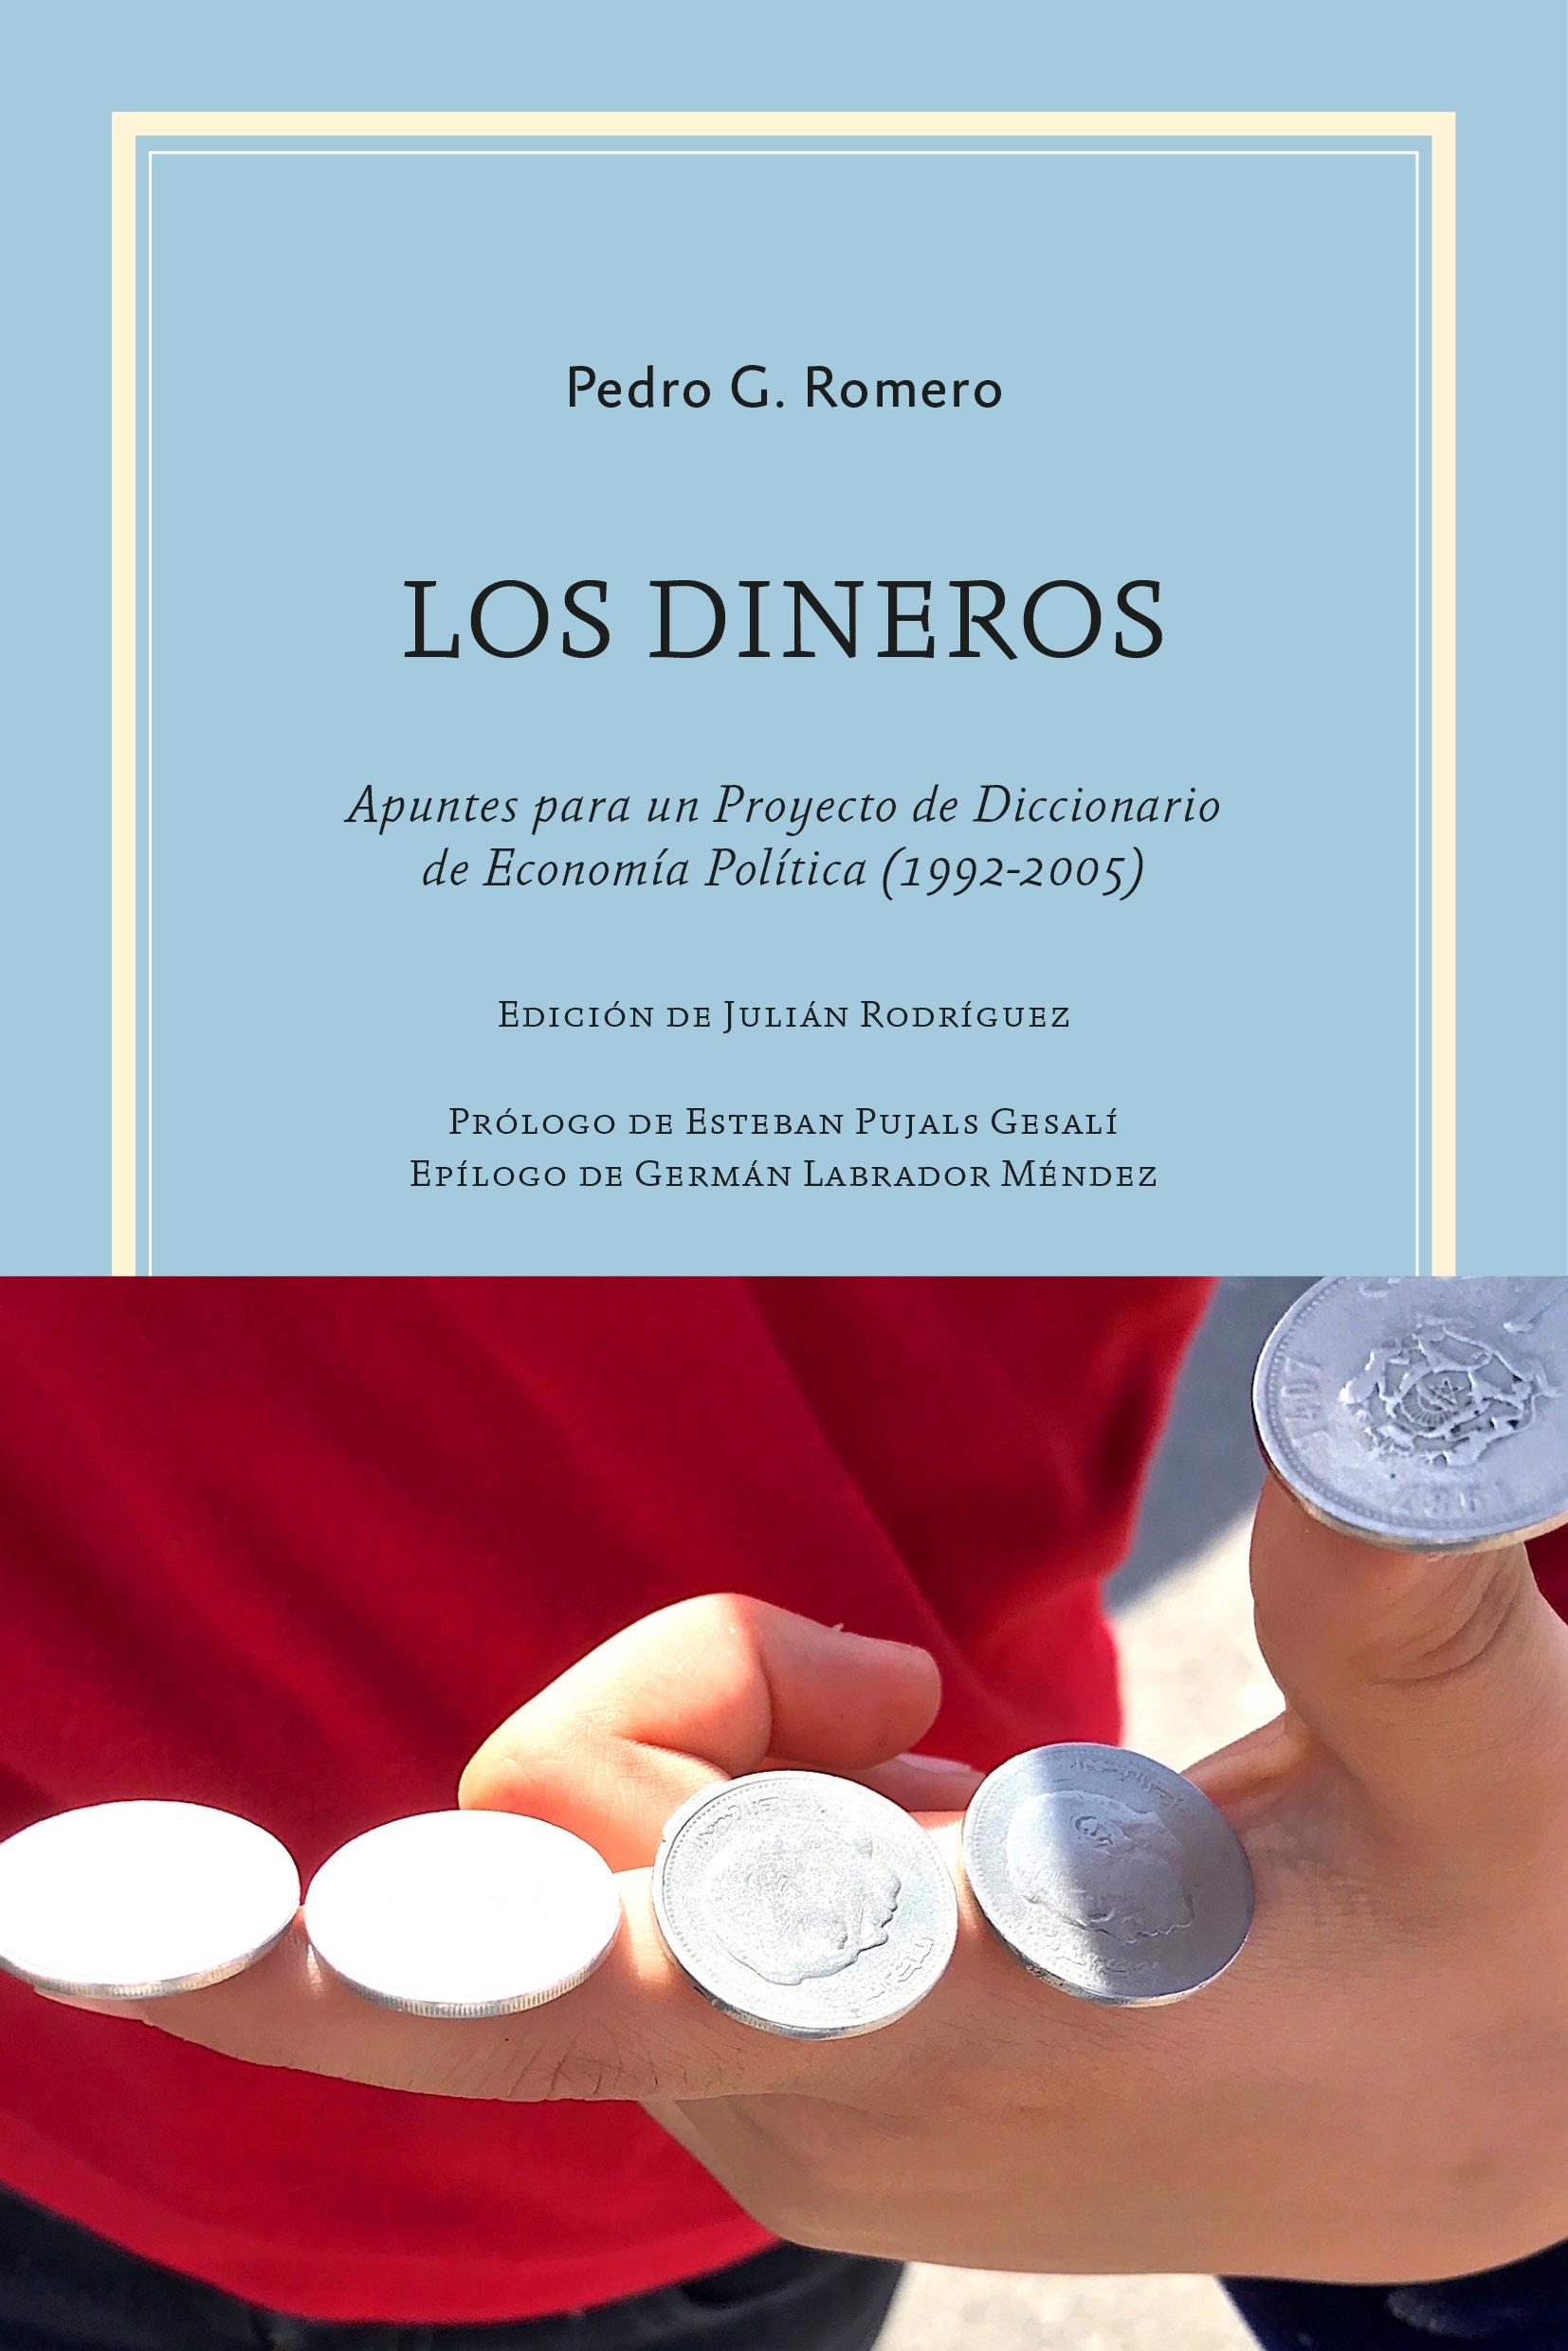 Los Dineros "Apuntes para un Proyecto de Diccionario de Economía Política (1992-2005)"